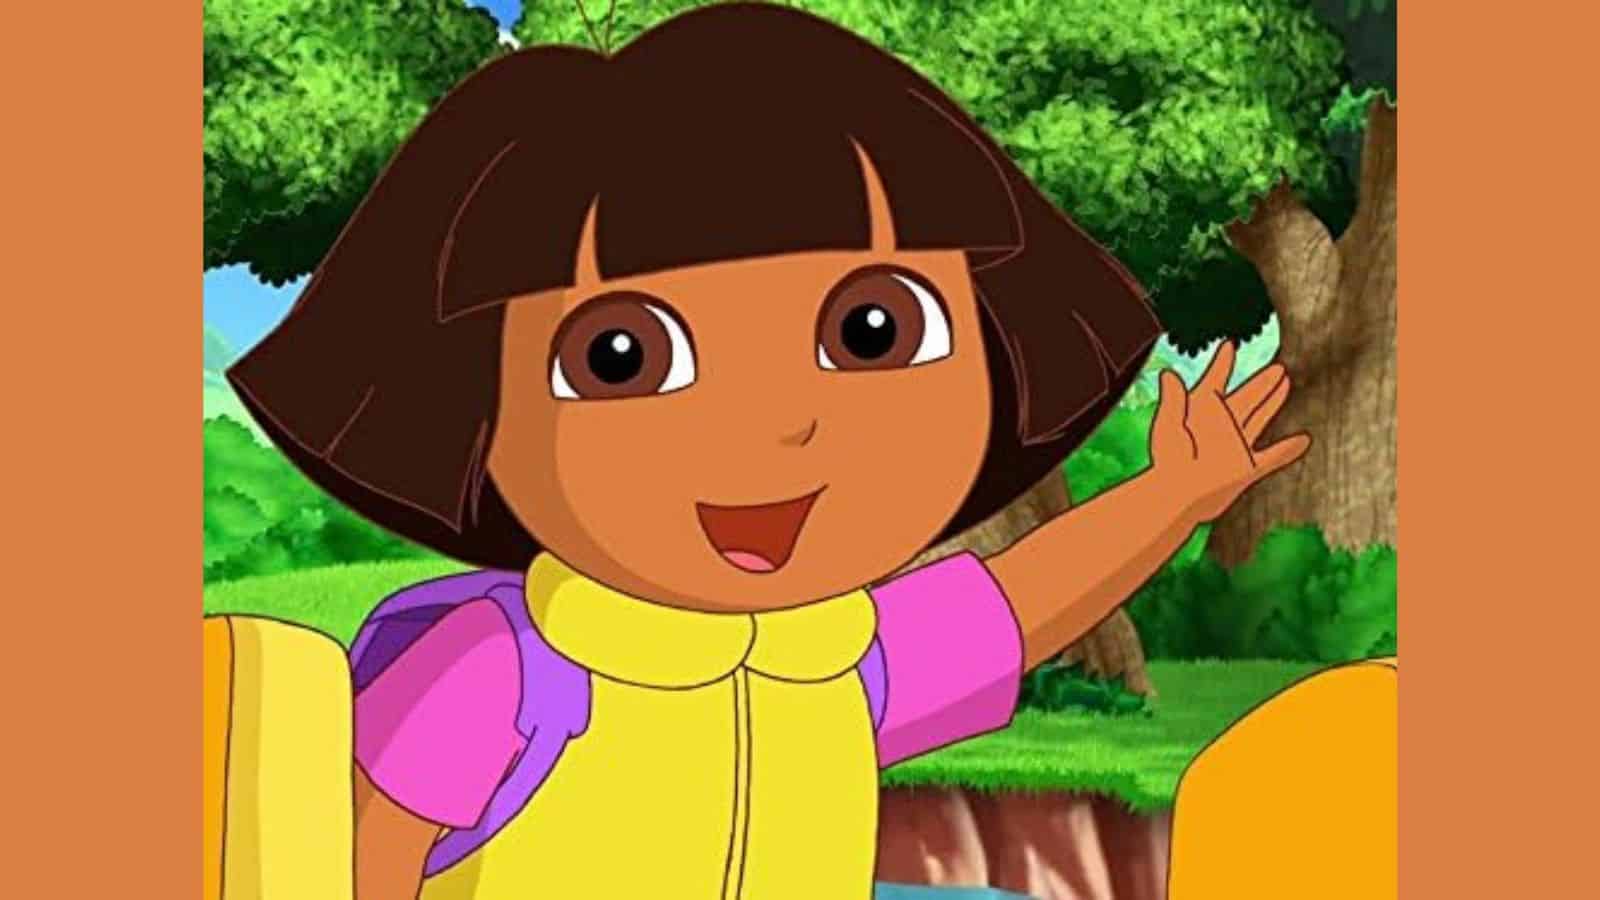 Dora the explorer movie